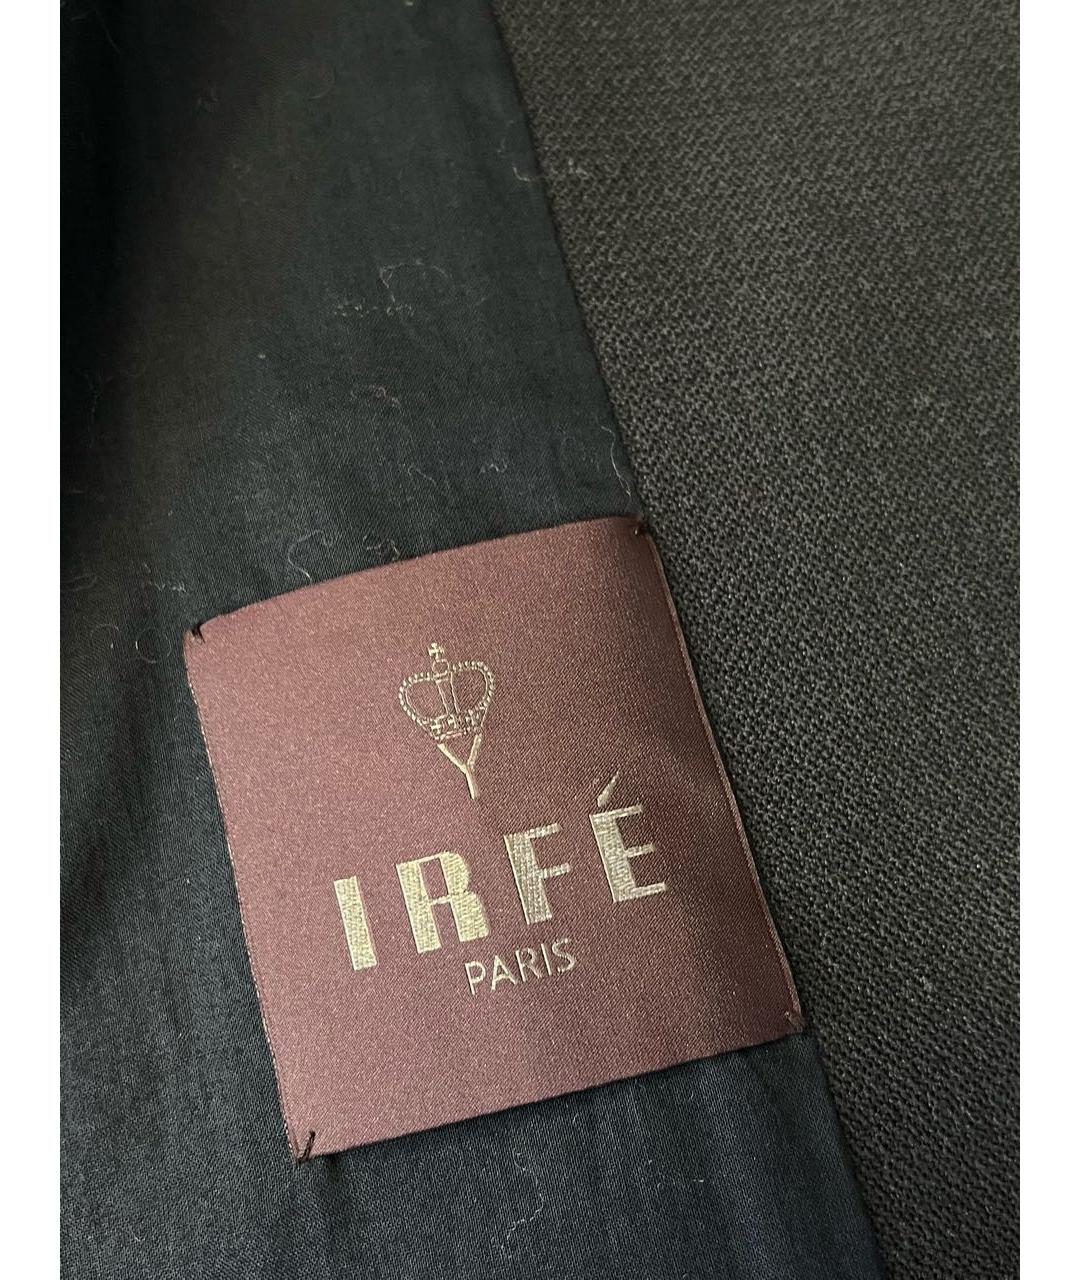 IRFE Черное шерстяное пальто, фото 6